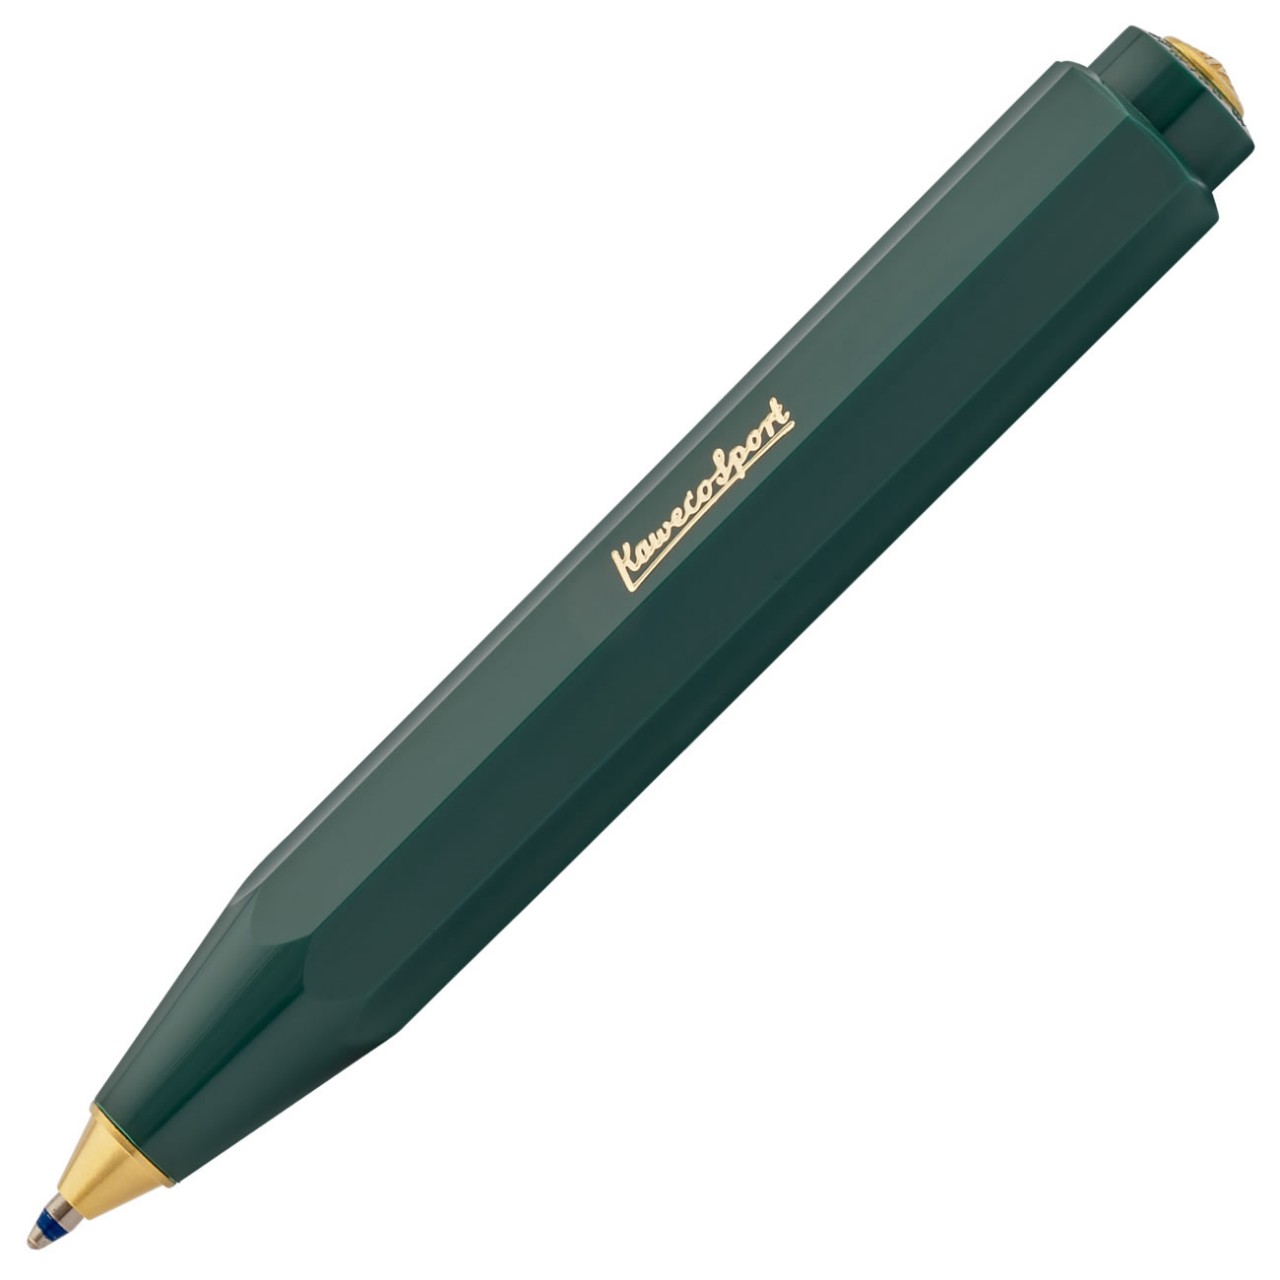 Kaweco CLASSIC SPORT Kugelschreiber  grün